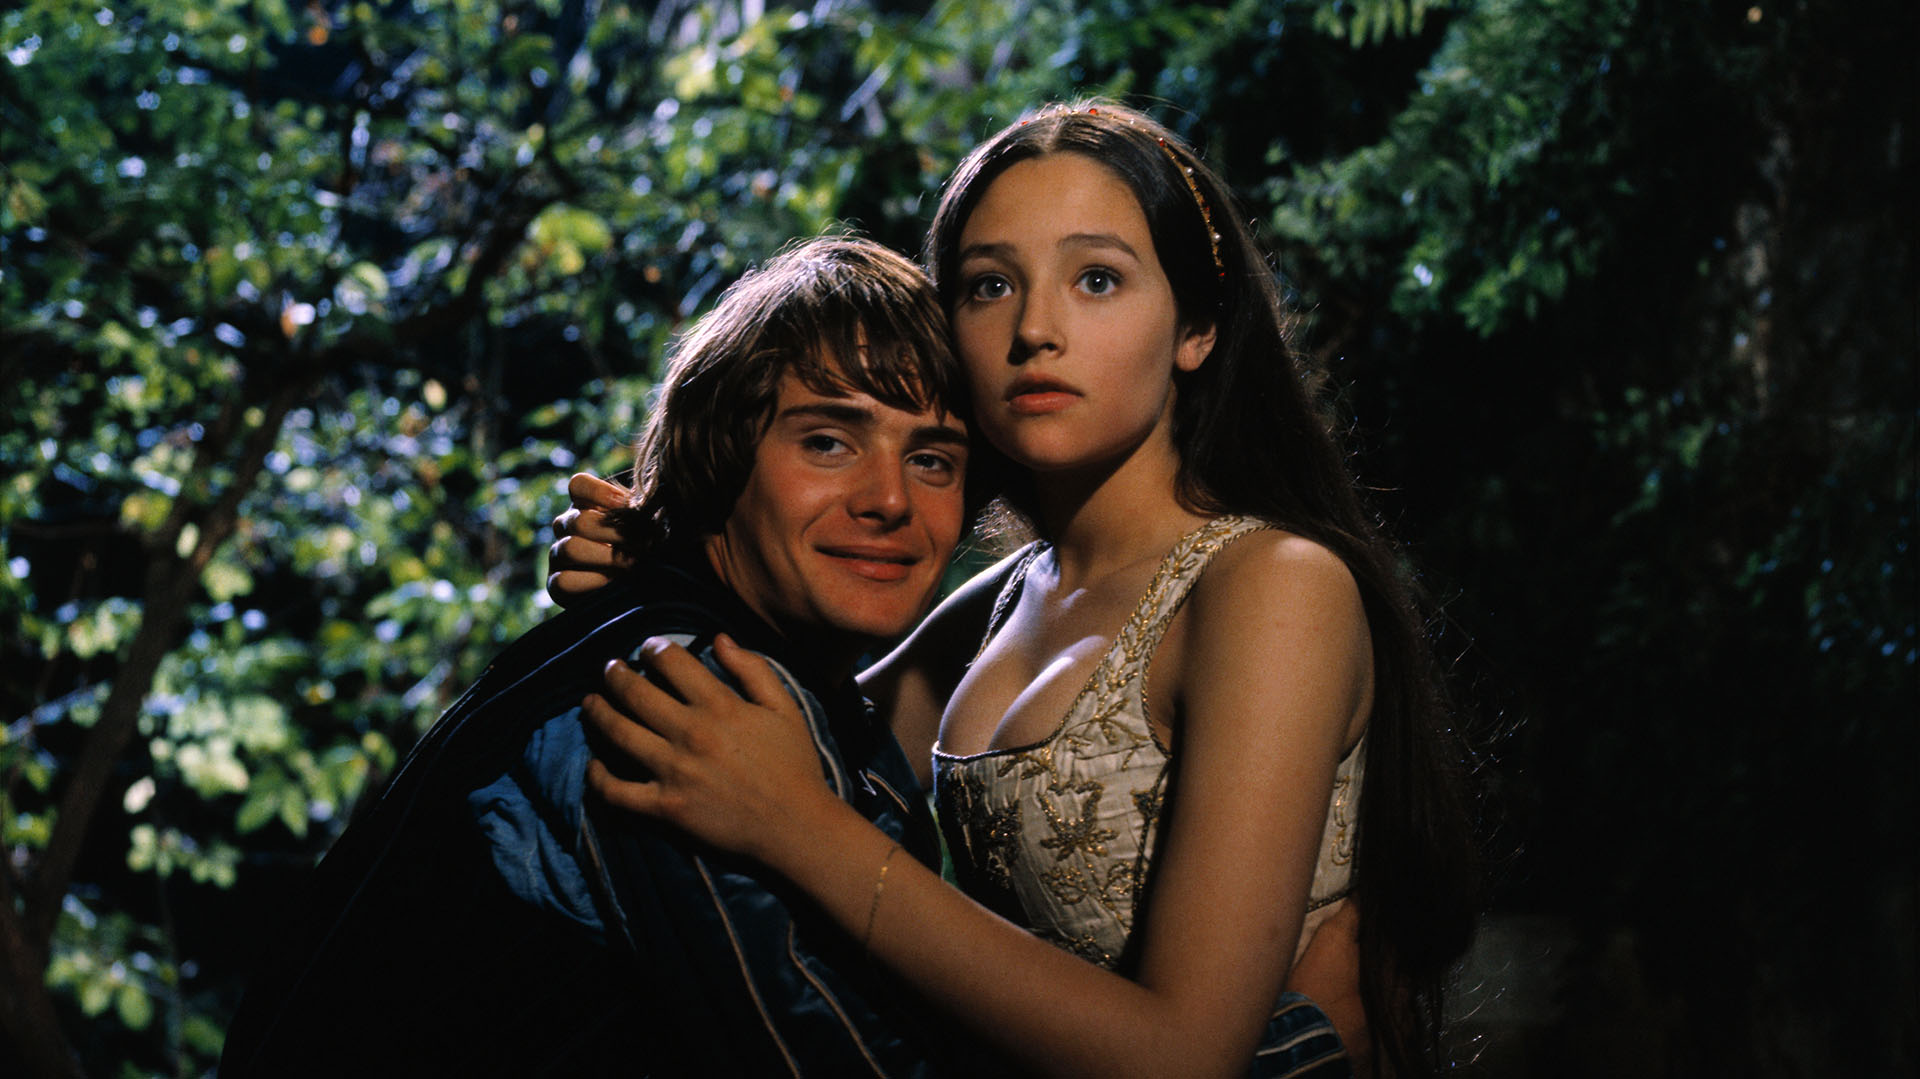 Leonard Whiting interpreta a Romeo Montague y Olivia Hussey interpreta a Juliet Capuleto en la producción de 1968 de Romeo y Julieta de Shakespeare dirigida por Franco Zeffirelli.
